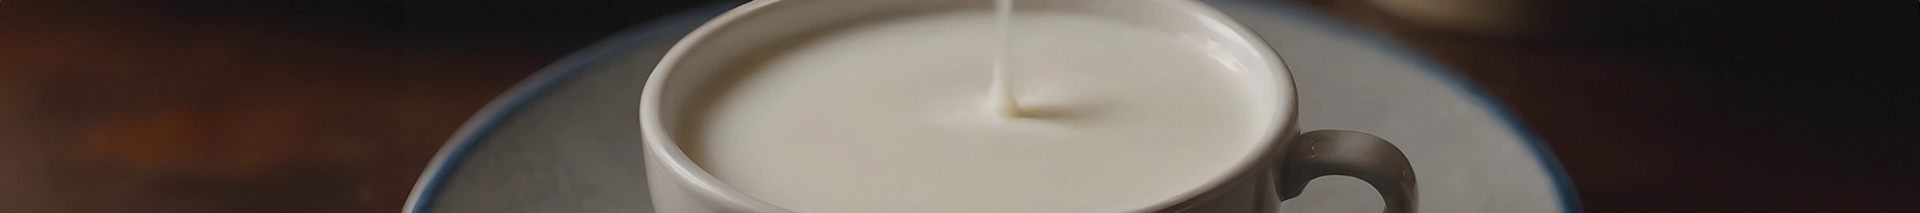 Banner para a categoria de Leites, zoom em uma caneca de leite